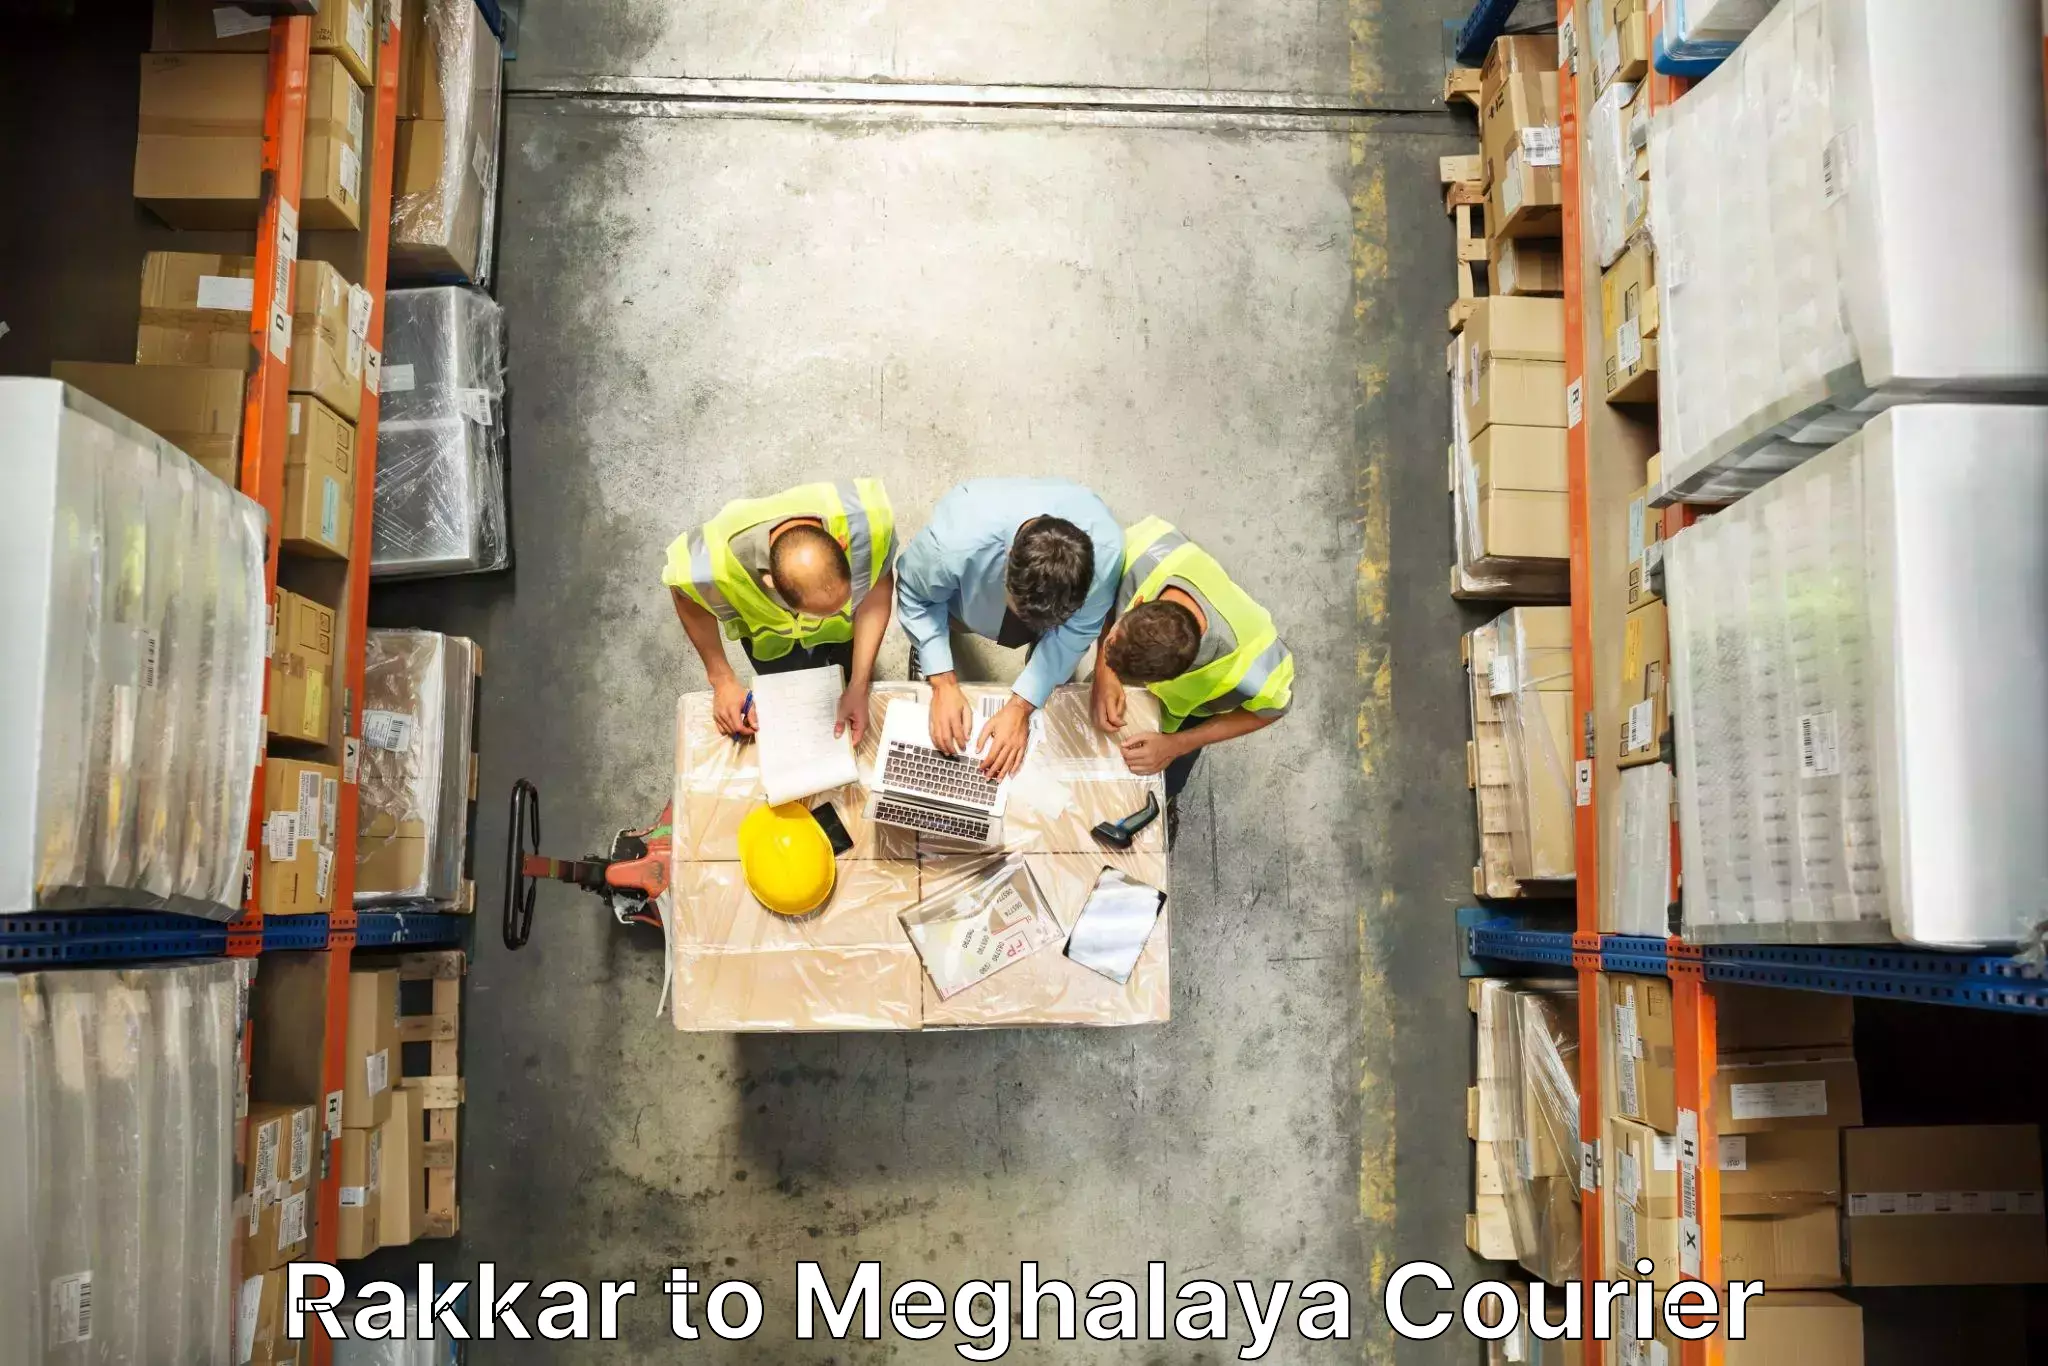 Efficient moving company Rakkar to Meghalaya